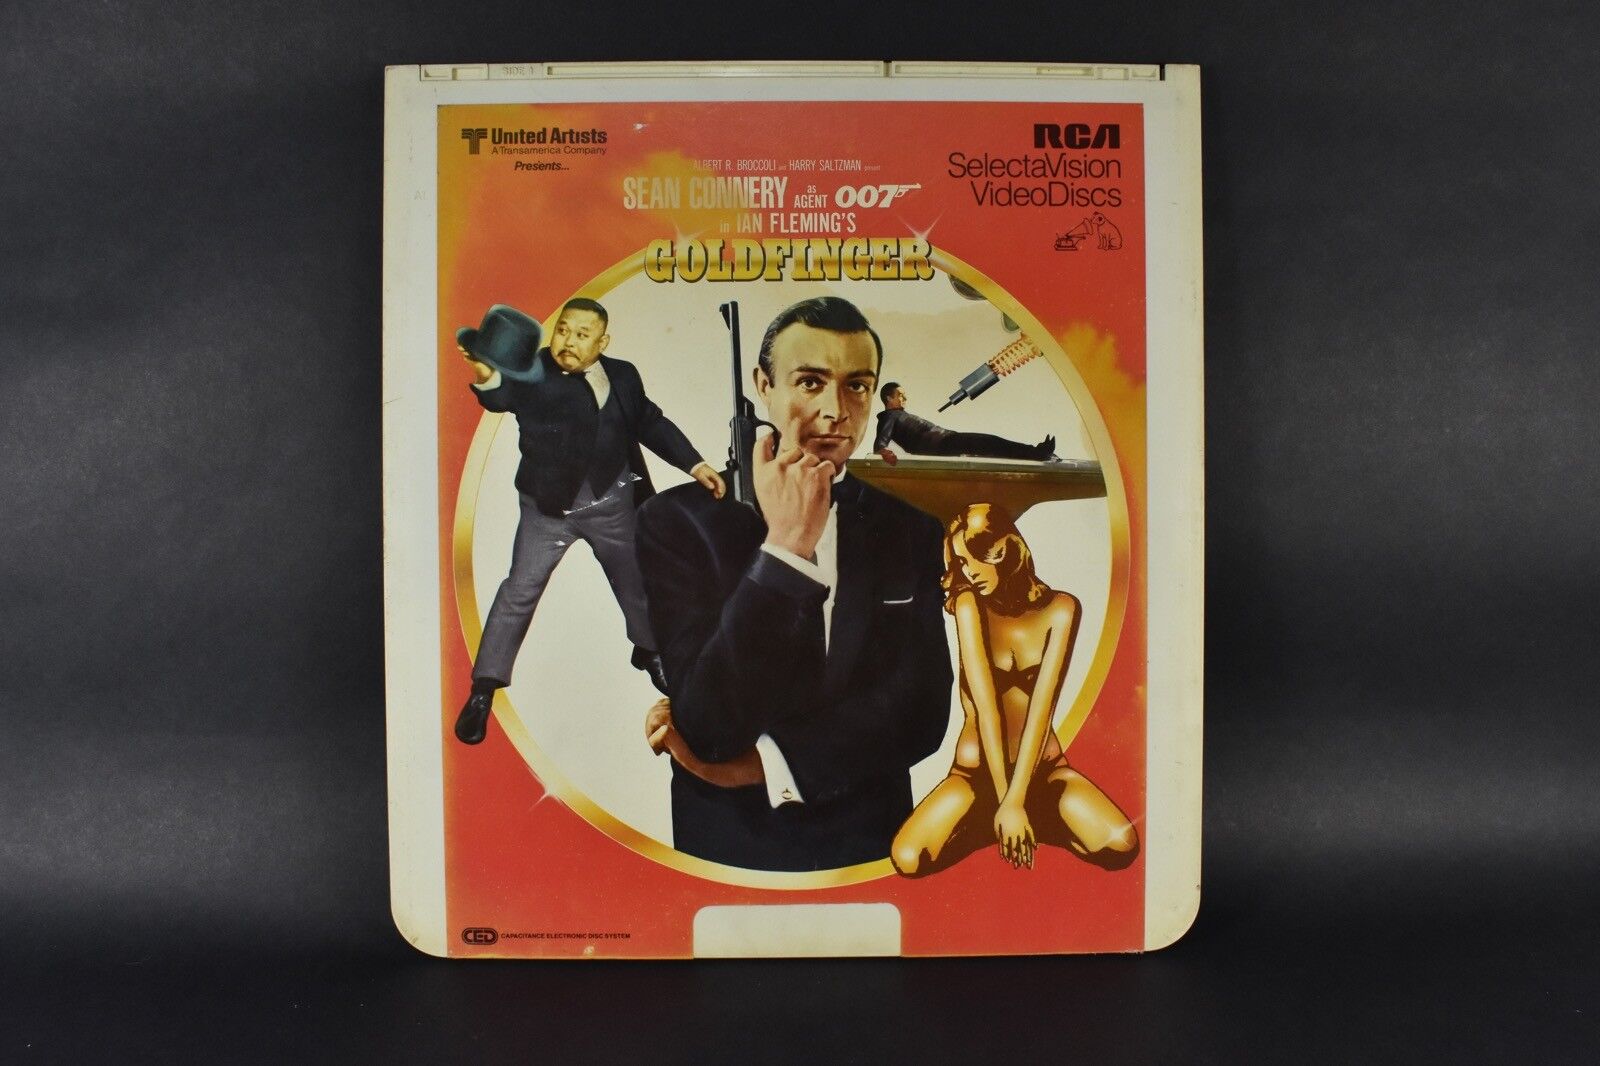 VINTAGE CED Video Disc Untested James Bond Goldfinger RCA01410